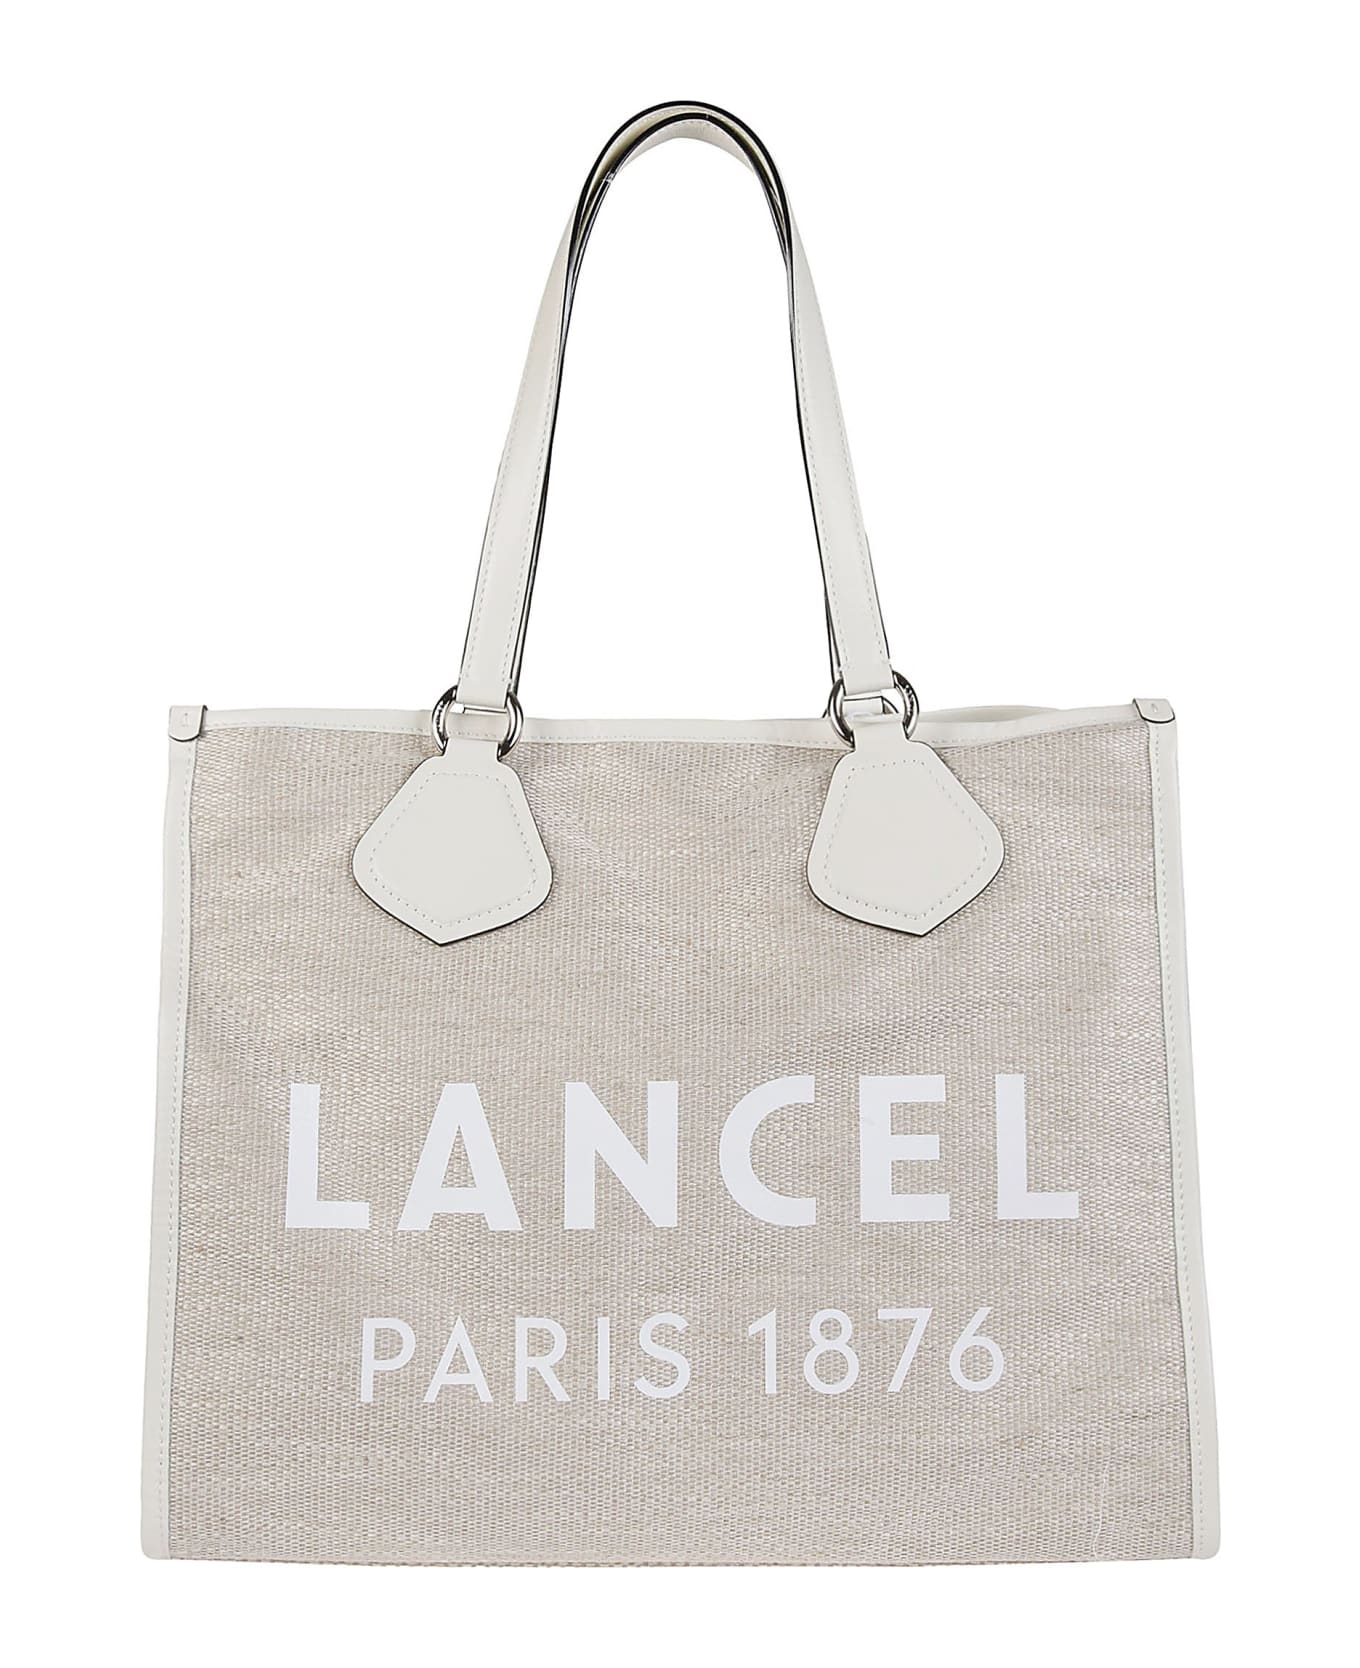 Lancel Summer Large Tote Bag - Z Naturel/blanc